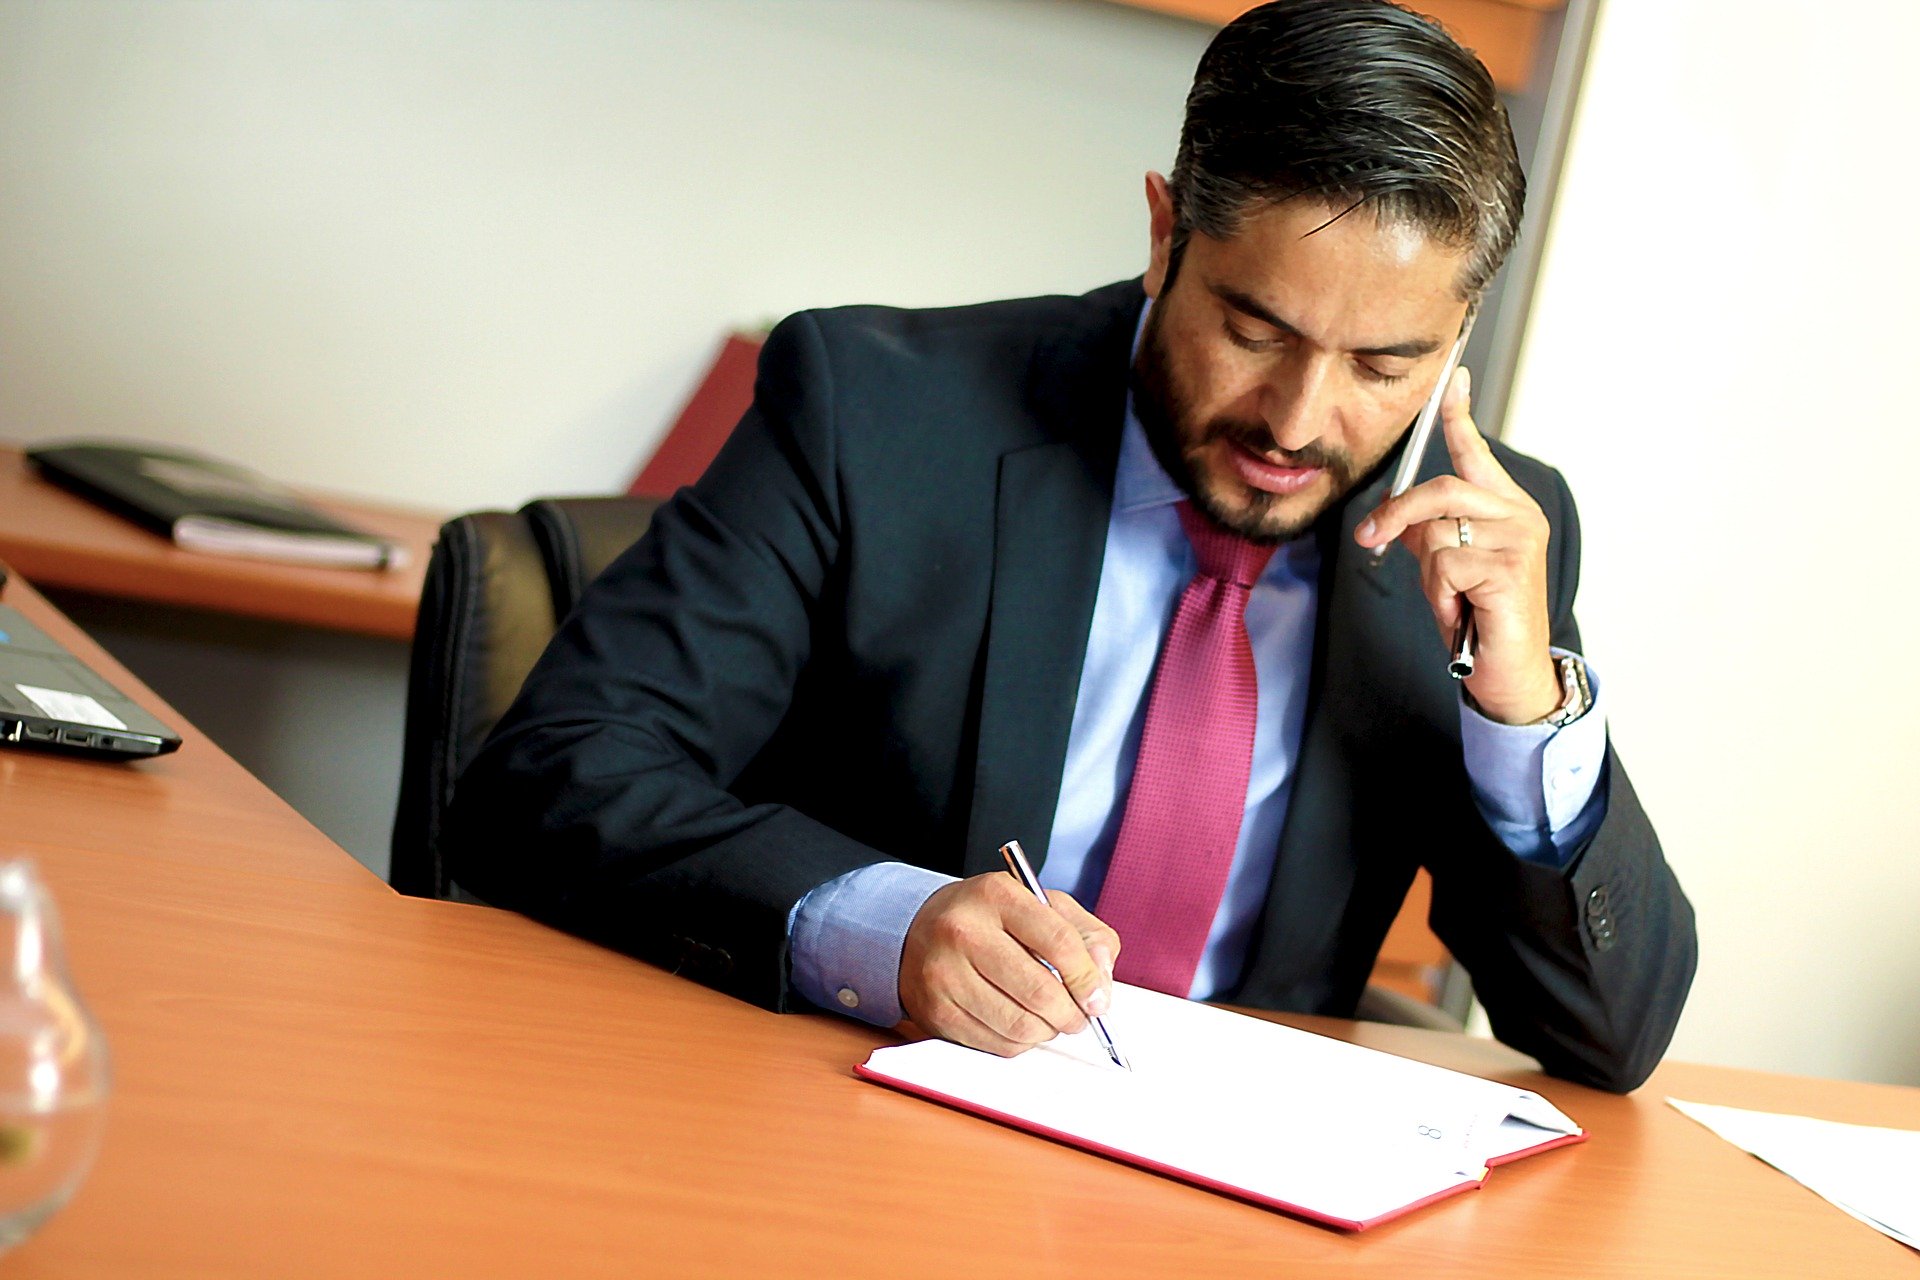 Ein Mann sitzt telefonierend an einem Schreibtisch. Er trägt einen Anzug und macht sich Notizen. Das Bild ist für einen Beitrag über die Arbeitsbedingungen von Rechtsanwaltsanwärter:innen.